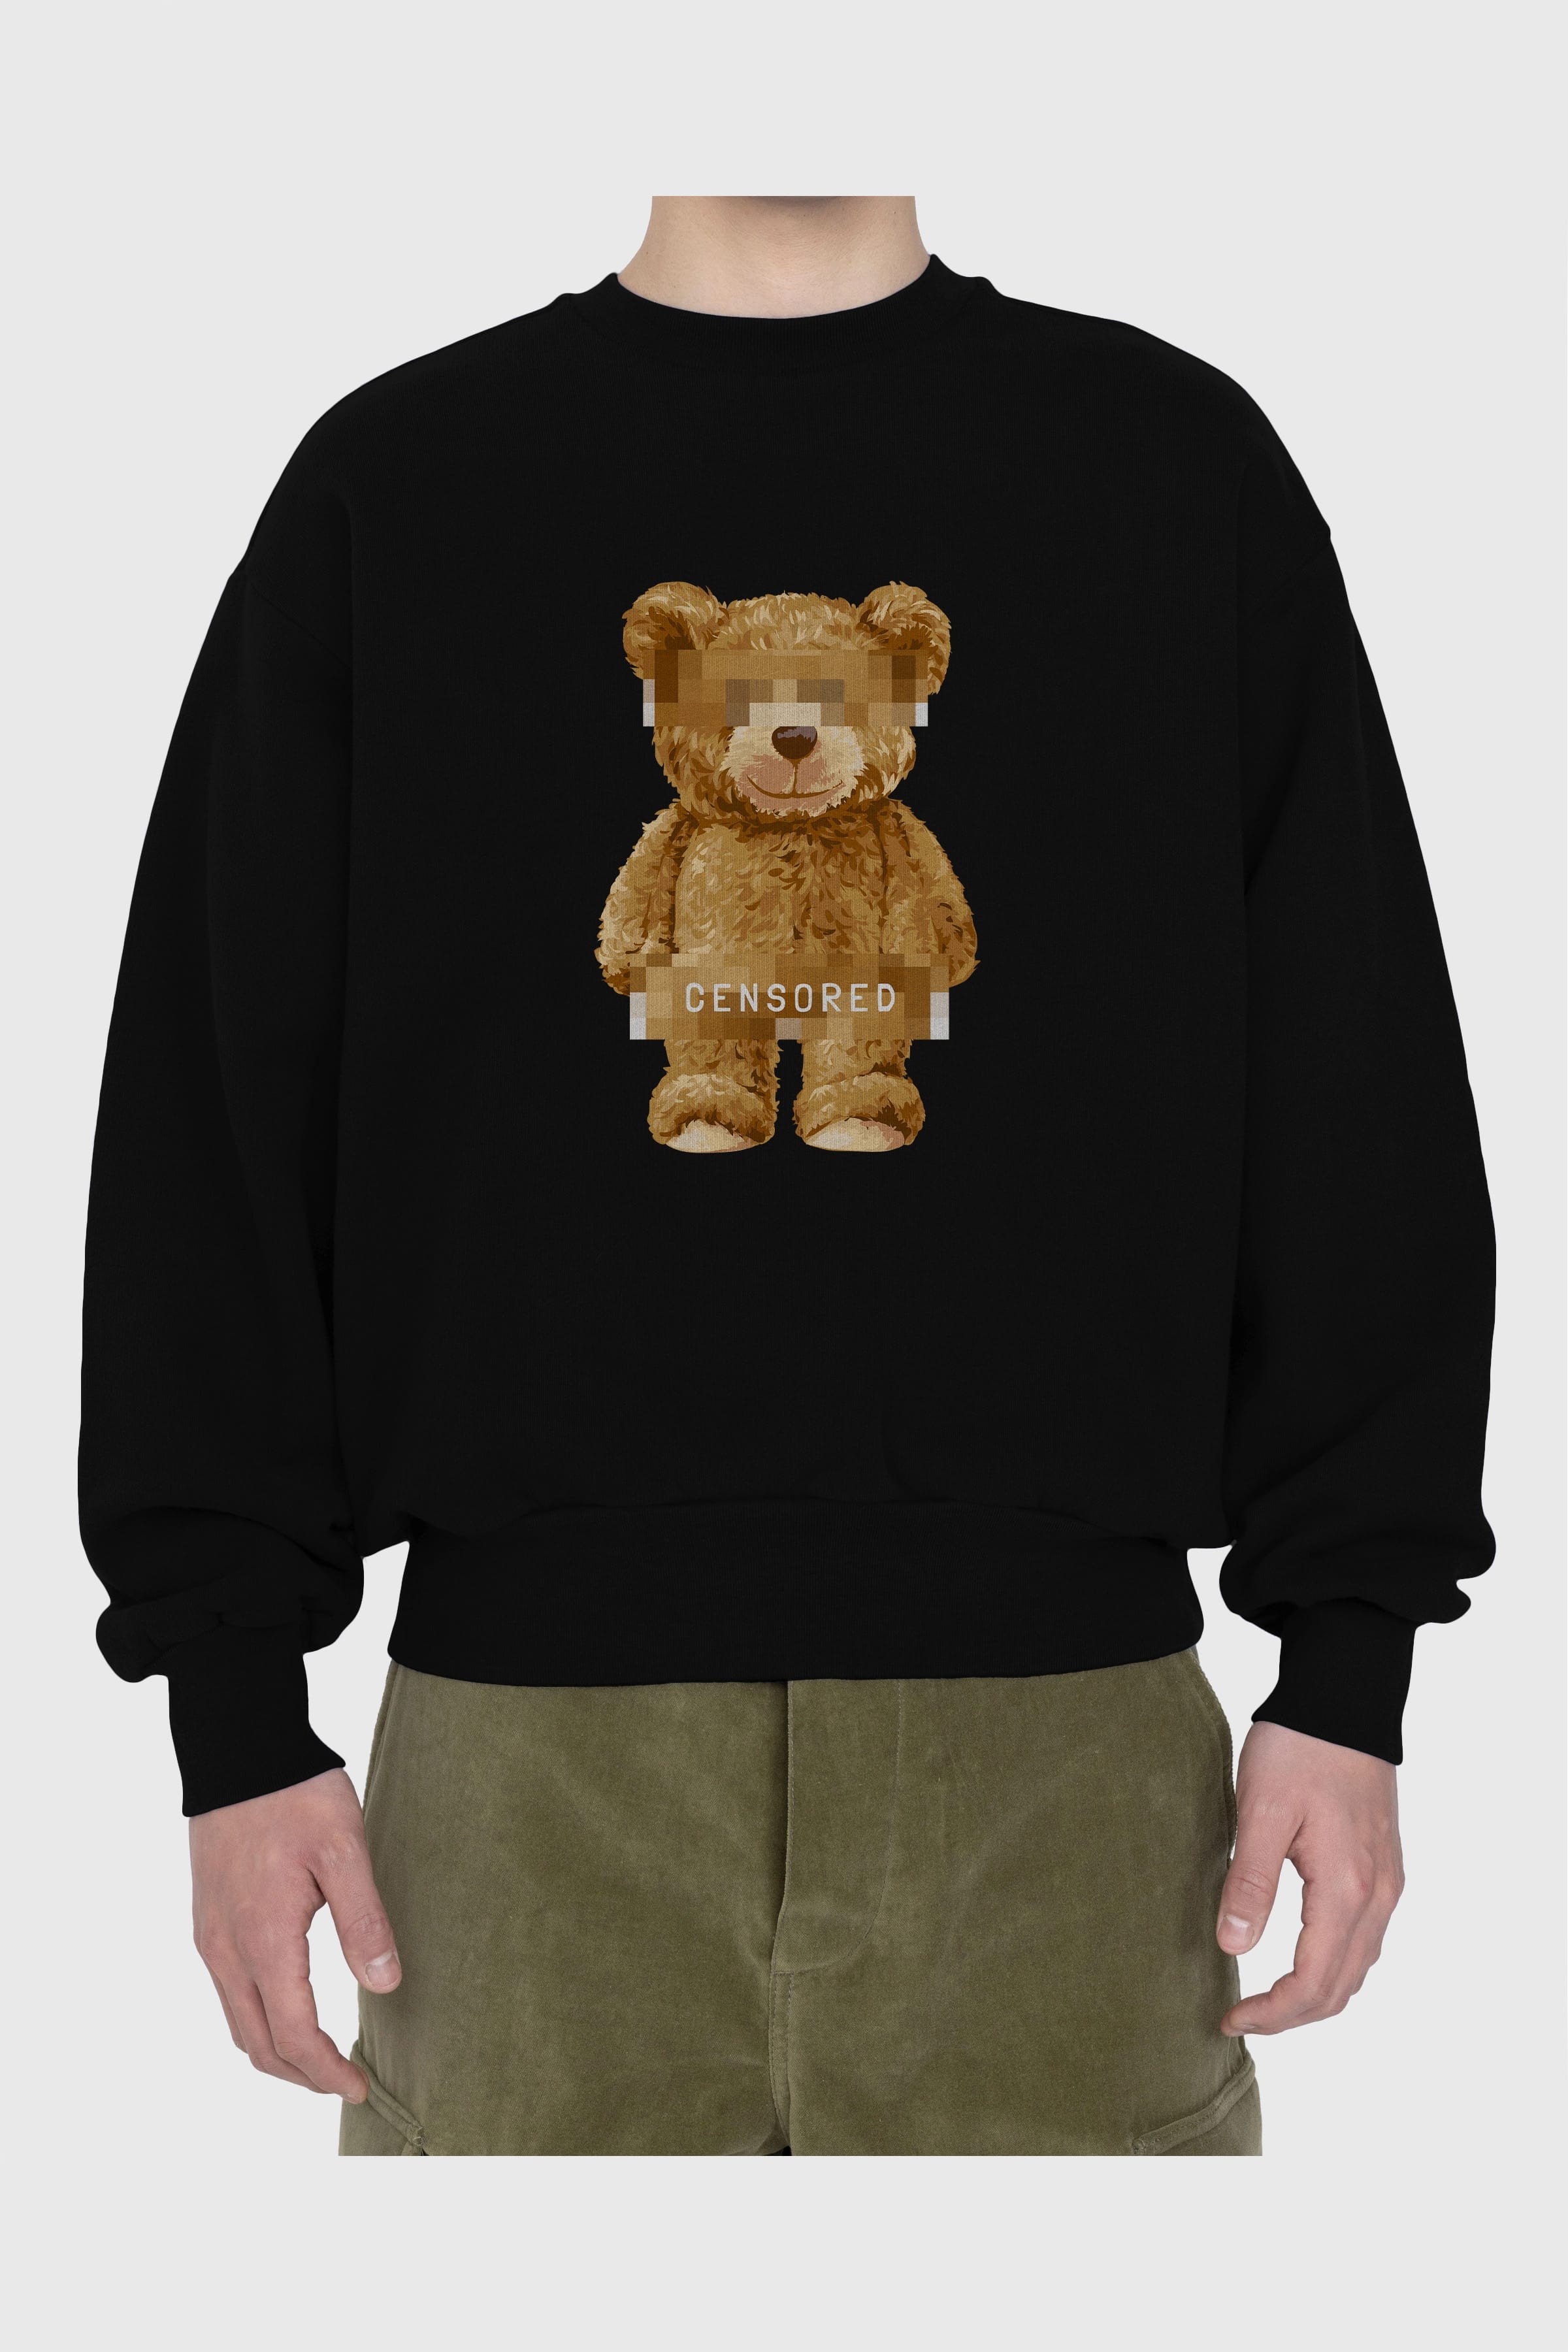 Teddy Bear Censored Ön Baskılı Oversize Sweatshirt Erkek Kadın Unisex